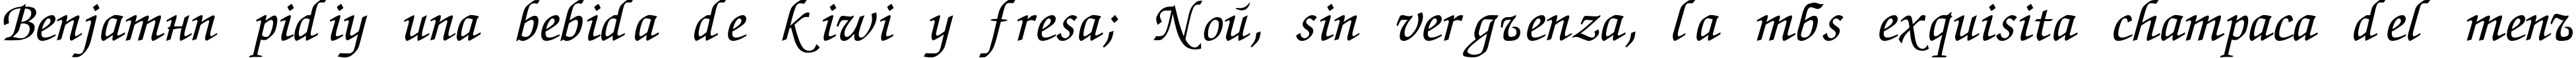 Пример написания шрифтом Chancery текста на испанском